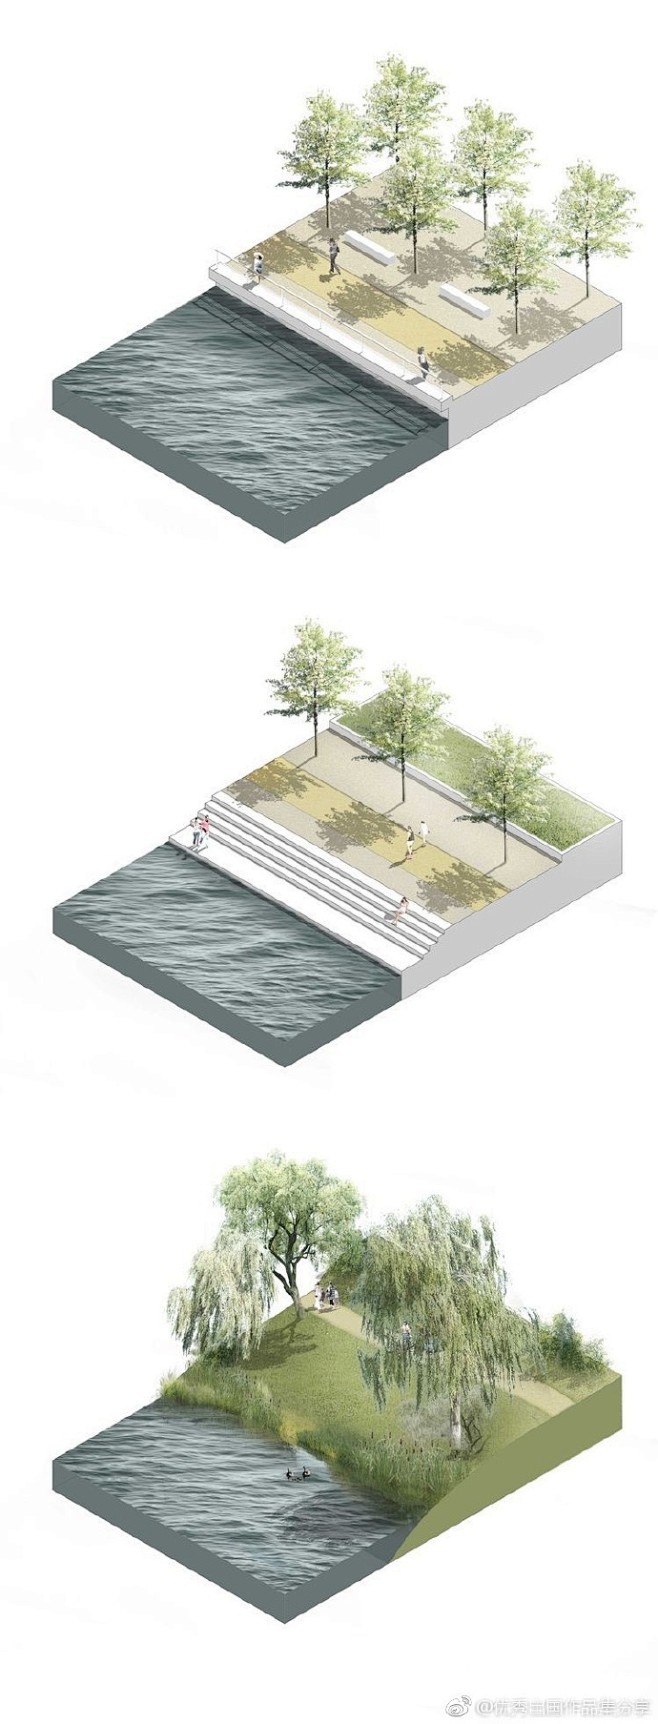 分享几组滨水景观断面分析图#景观空间设计...